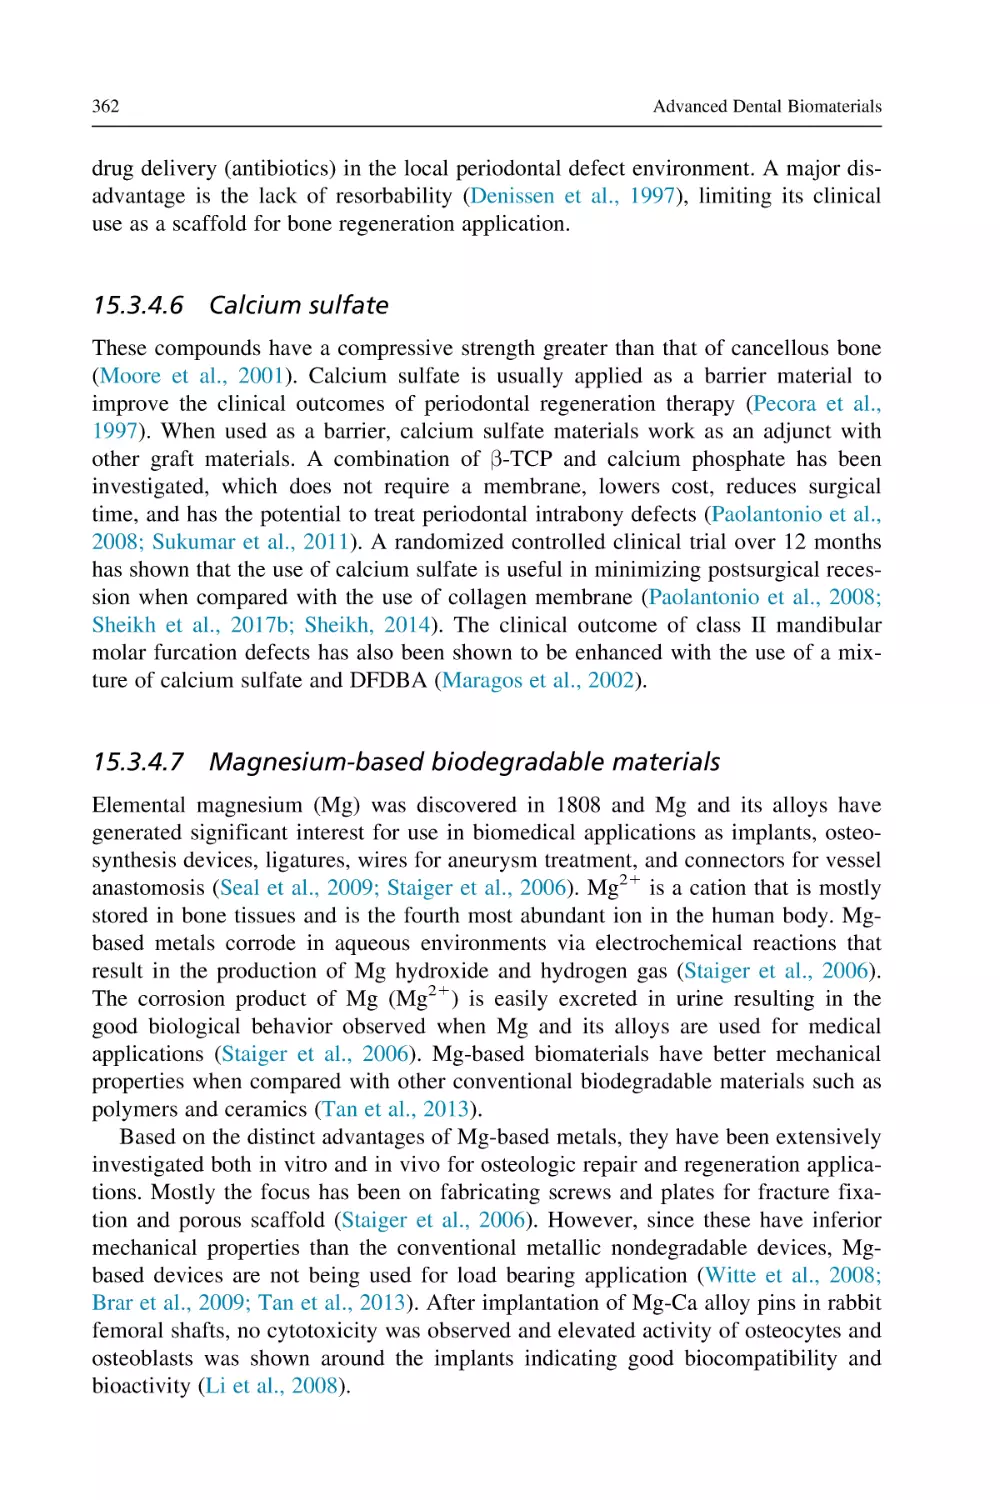 15.3.4.6 Calcium sulfate
15.3.4.7 Magnesium-based biodegradable materials